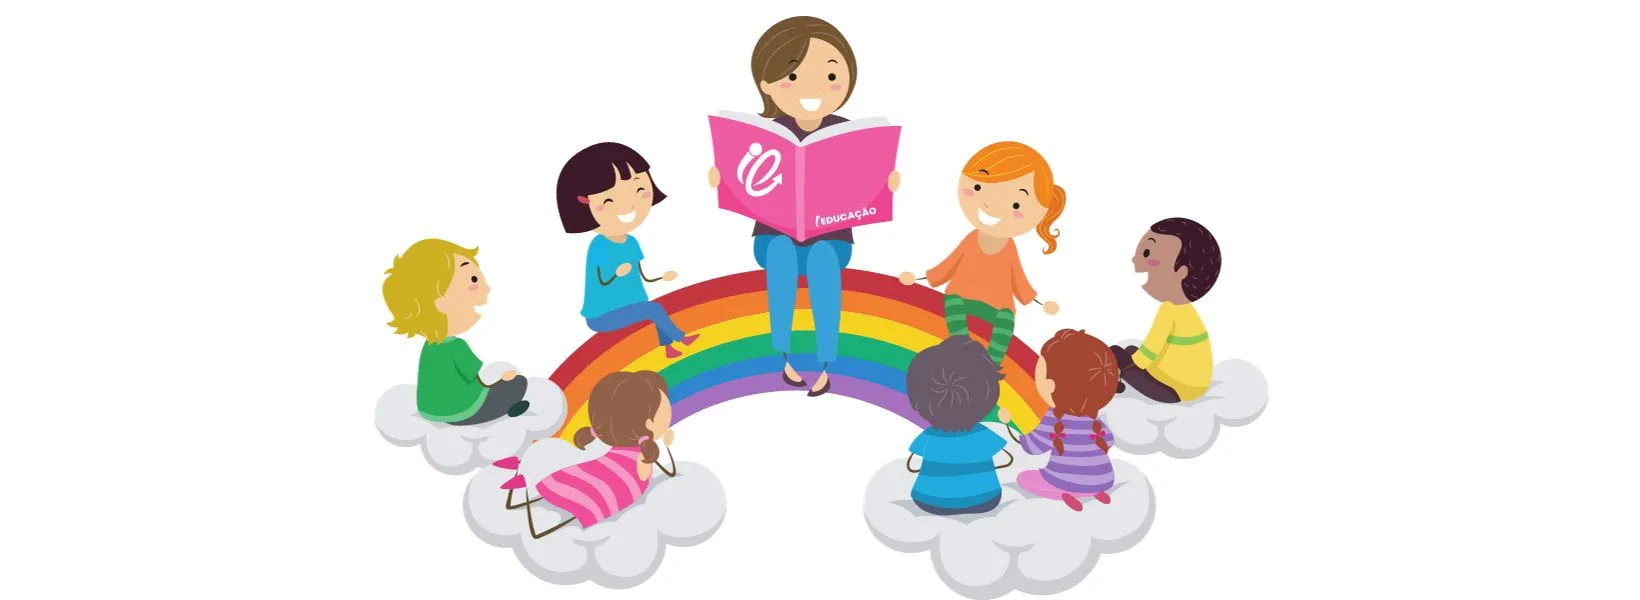 História infantil - Como escolher a história adequada para as crianças - Leitura de histórias infantis